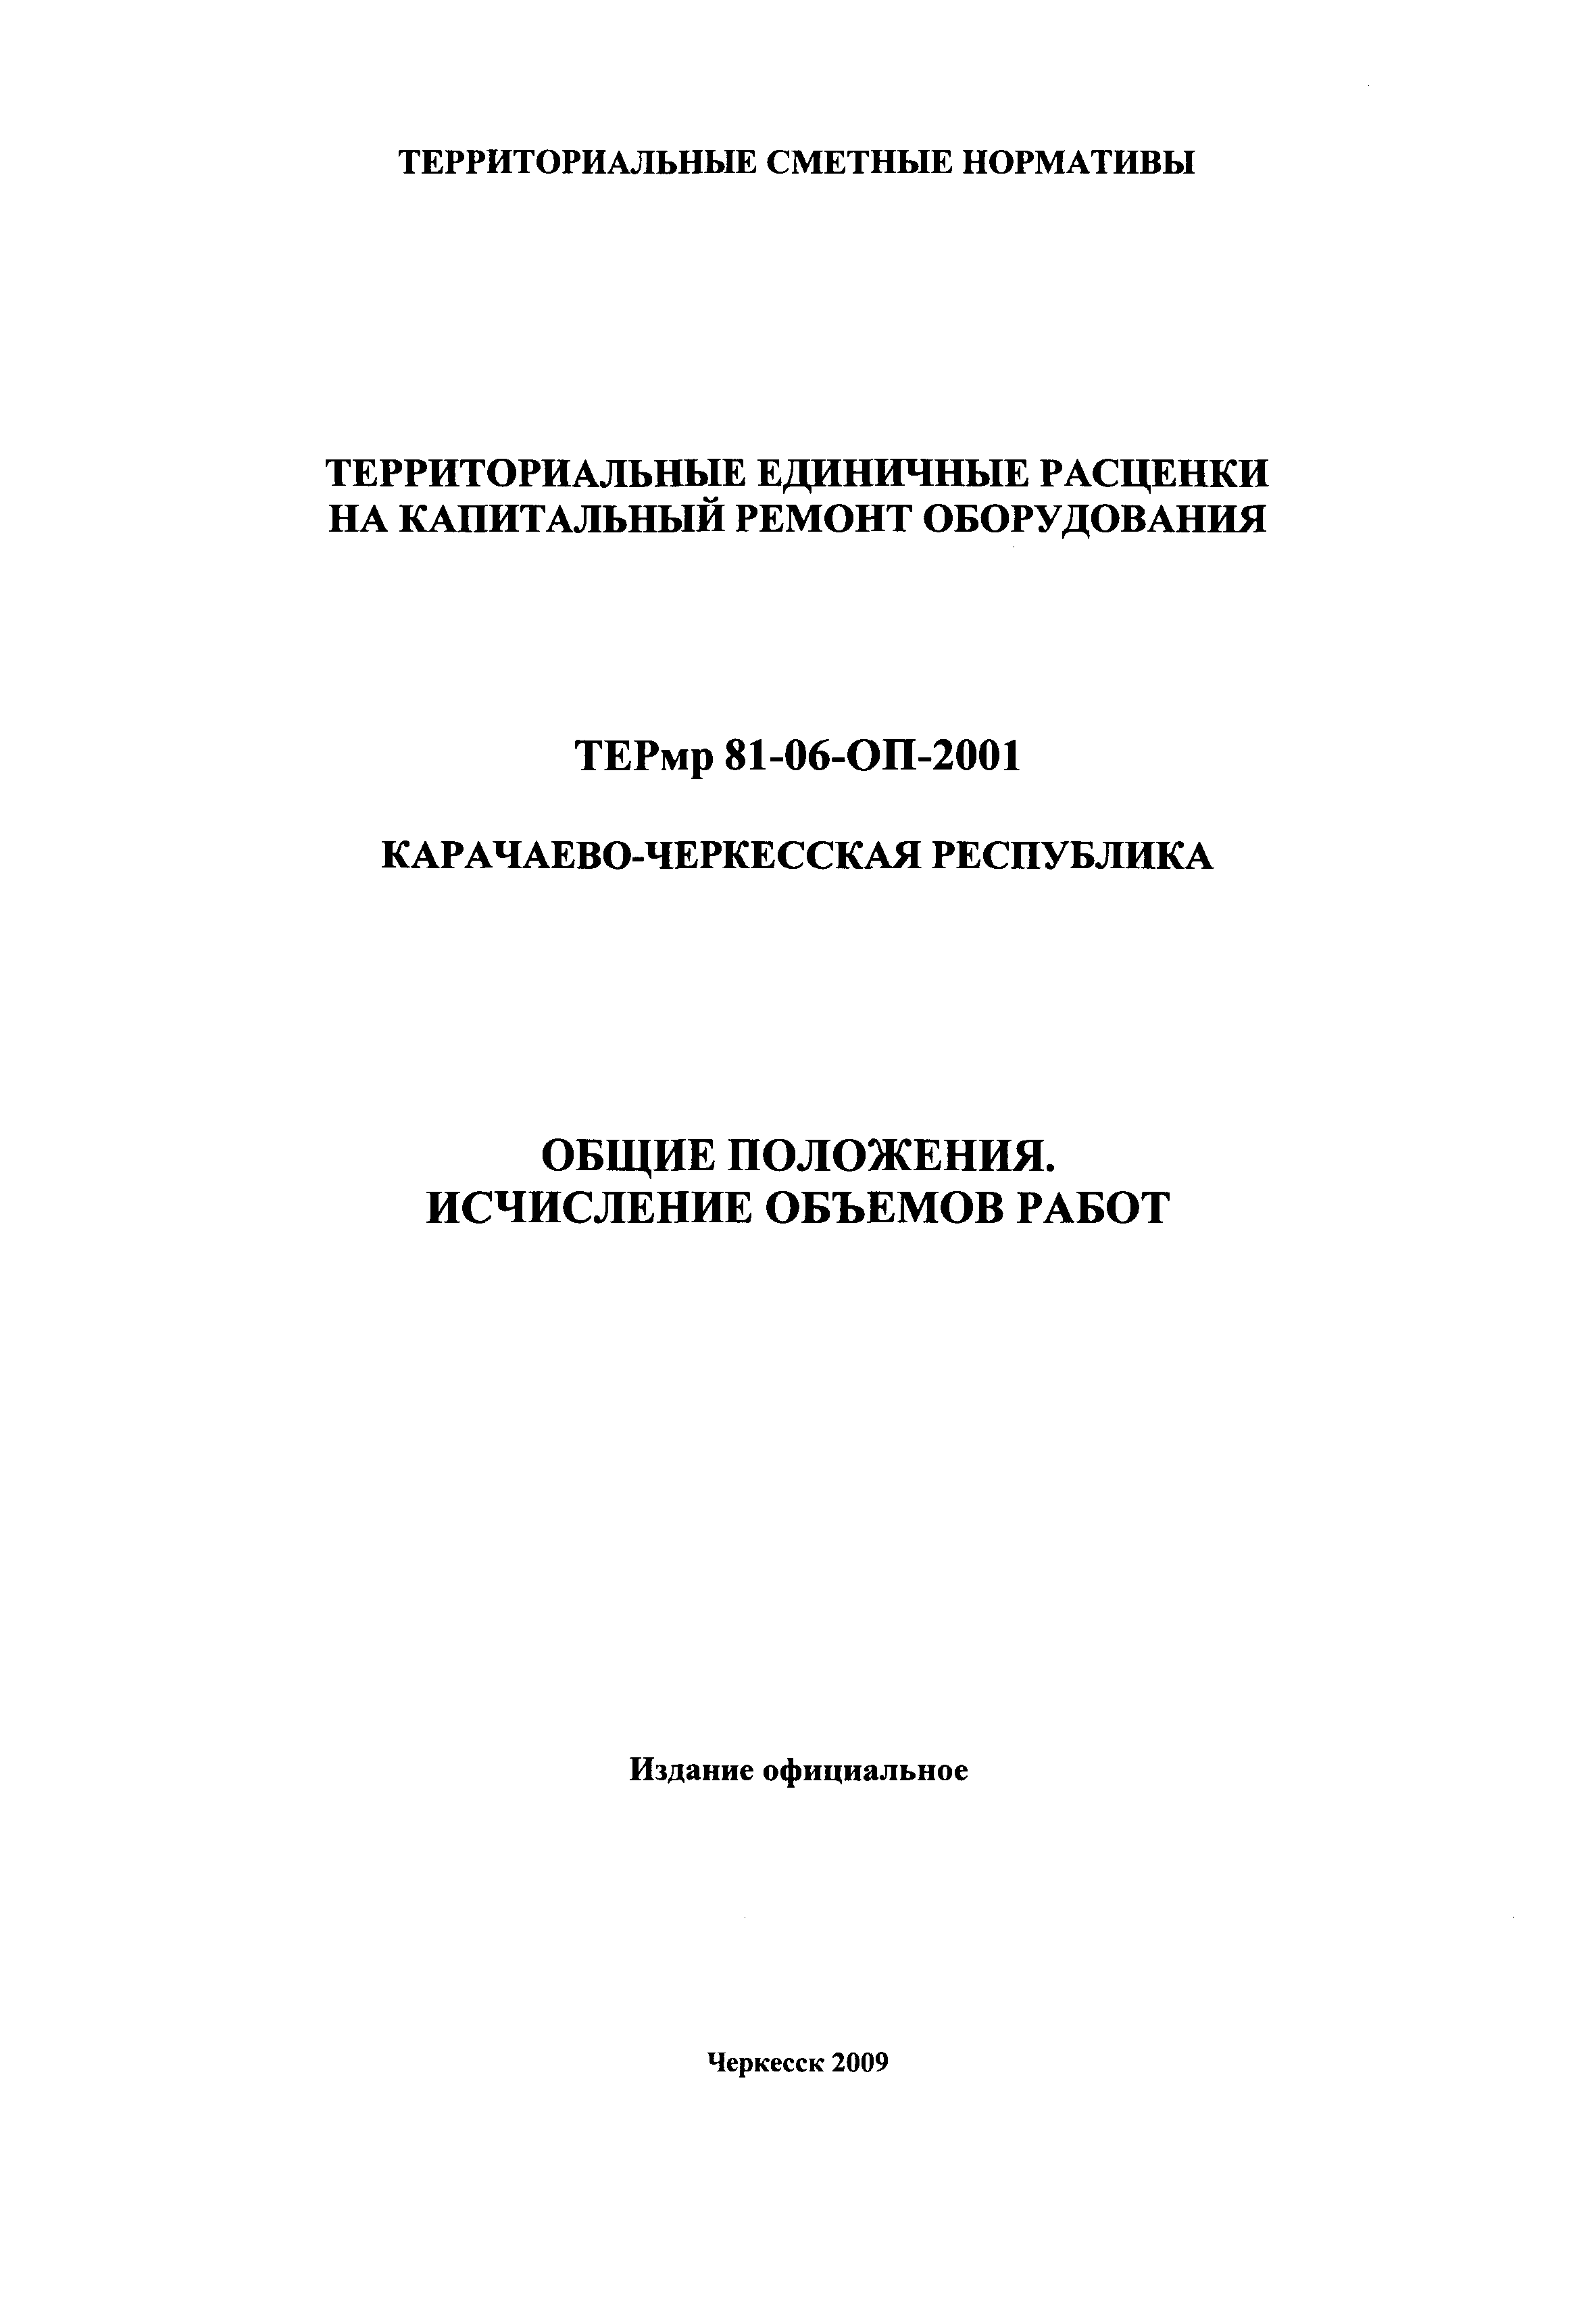 ТЕРмр Карачаево-Черкесская Республика 2001-ОП